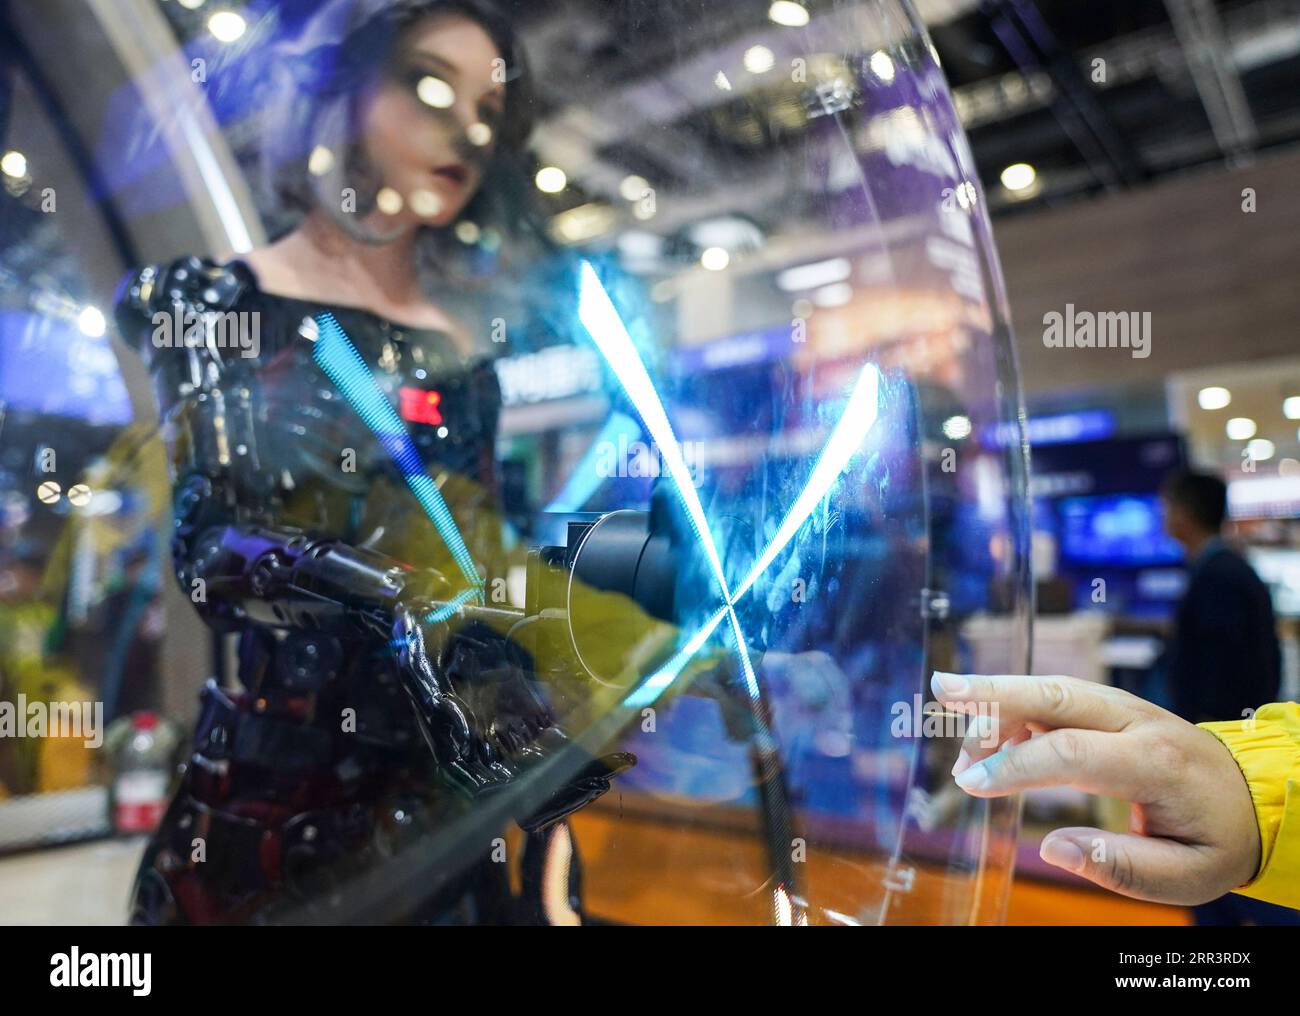 201110 -- BEIJING, 10 novembre 2020 -- Un visiteur interagit avec un  androïde bionique d'EXROBOTS dans la zone d'exposition Intelligent Industry  and information Technology lors de la troisième China International Import  Expo